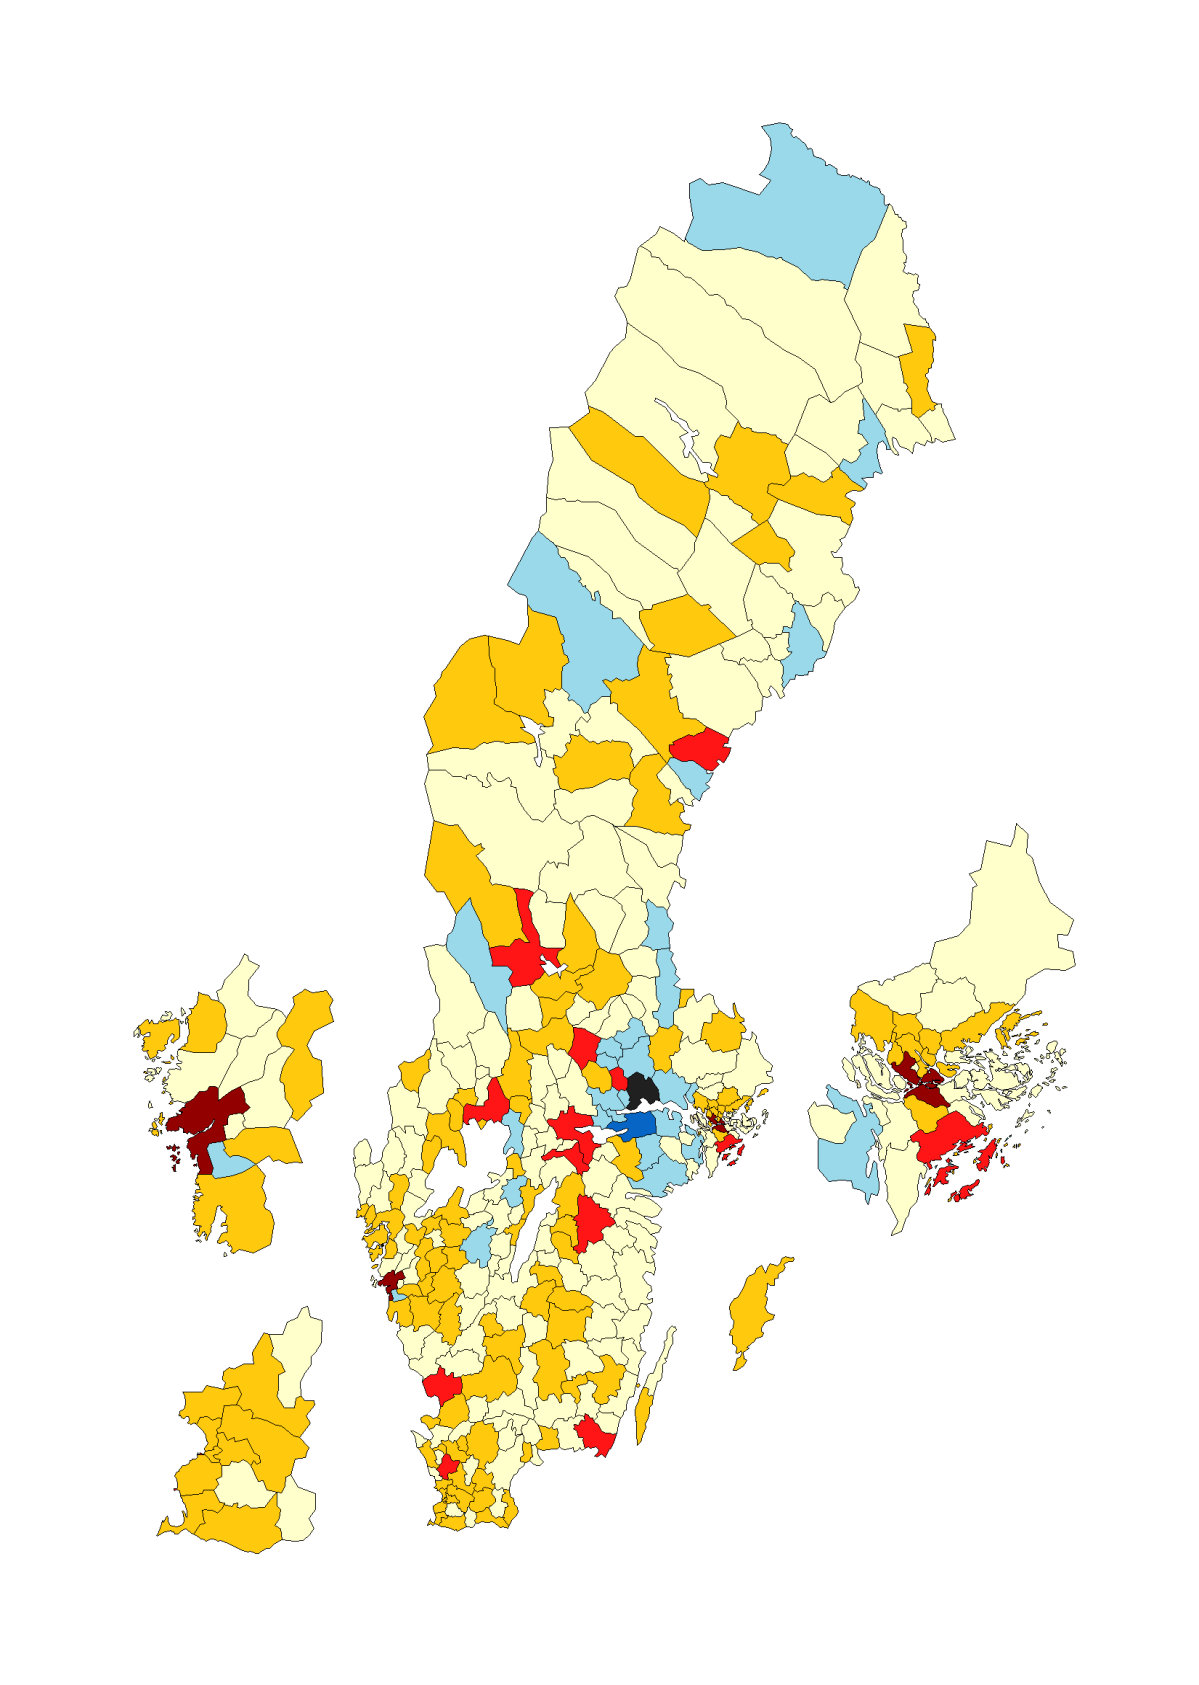 Figur 19 Västerås flyttnetto mot övriga kommuner i Sverige (indelat efter storleken på flyttnettot), år 2014 (Blå = Flyttvinst över 10 resp